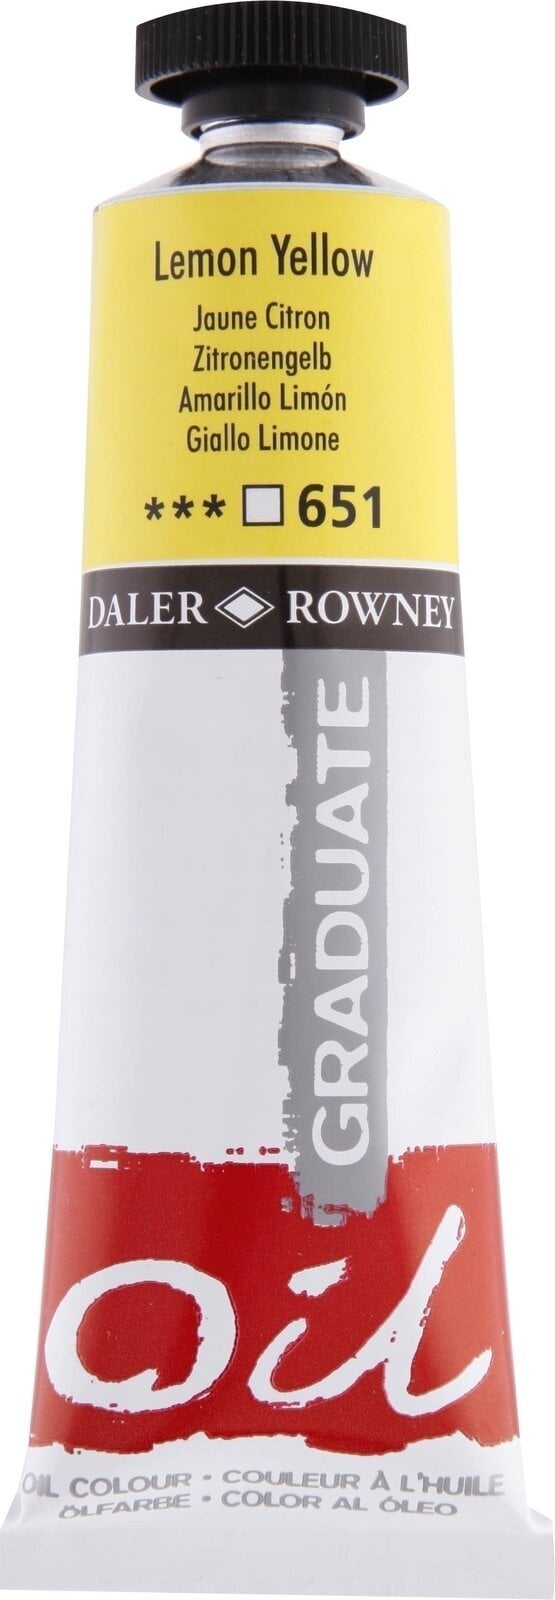 Oil colour Daler Rowney Graduate Oil Paint 38 ml Lemon Yellow